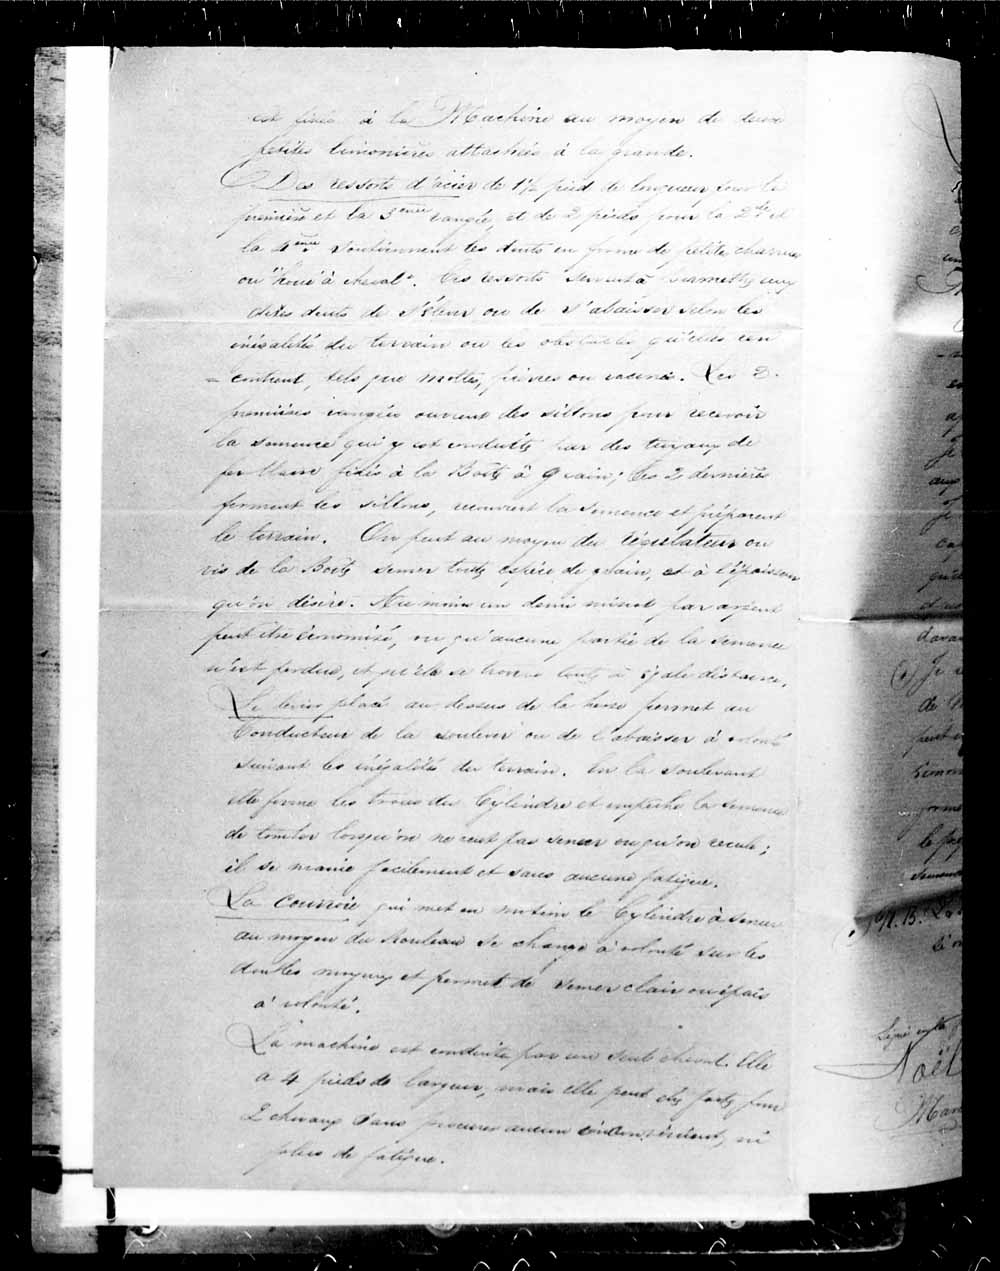 Page numérisé de Brevets canadiens, 1869-1919 pour l'image numéro: e003227435